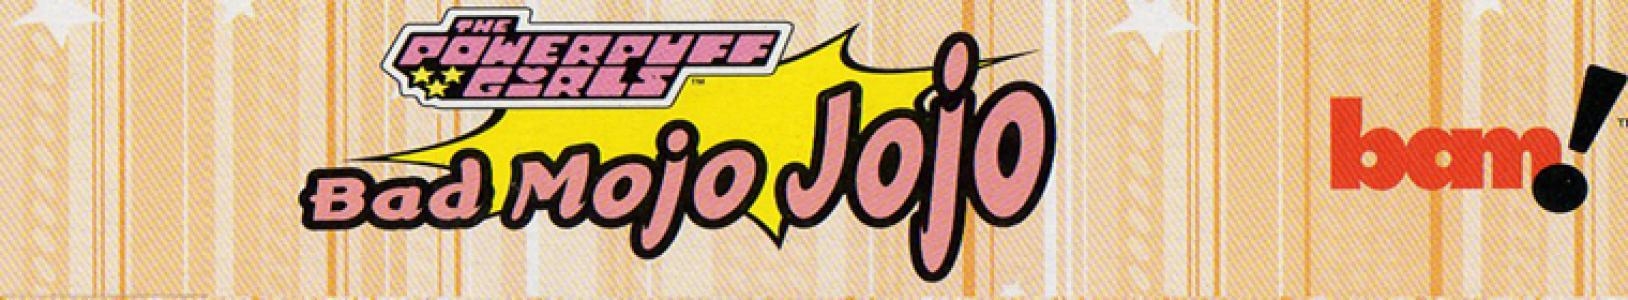 The Powerpuff Girls: Bad Mojo Jojo banner